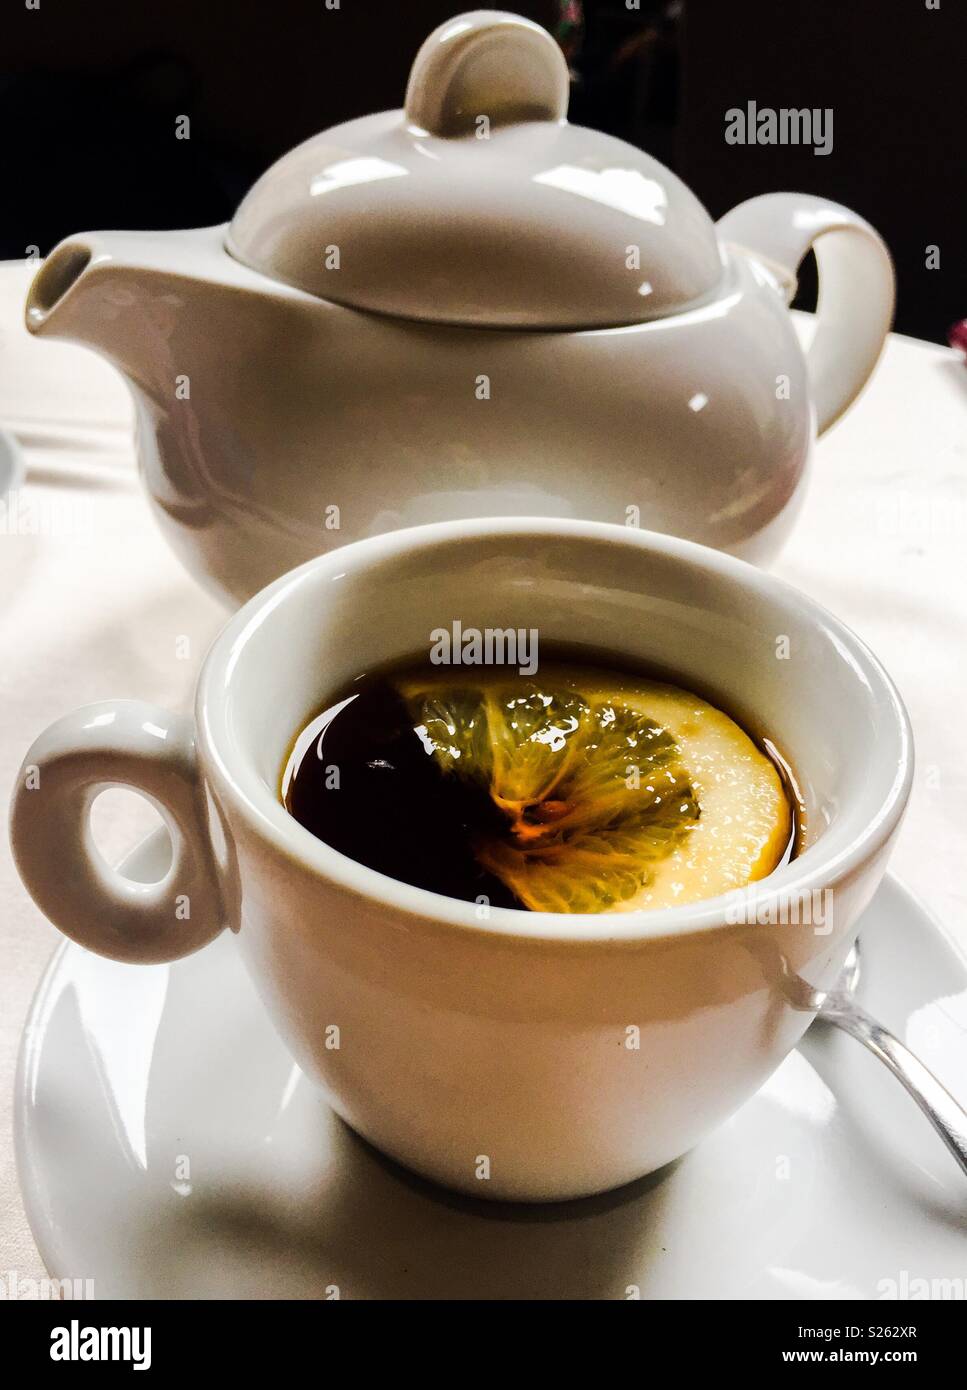 Weisse Teekanne, Tasse und Untertasse mit schwarzen Tee und Zitrone  Stockfotografie - Alamy